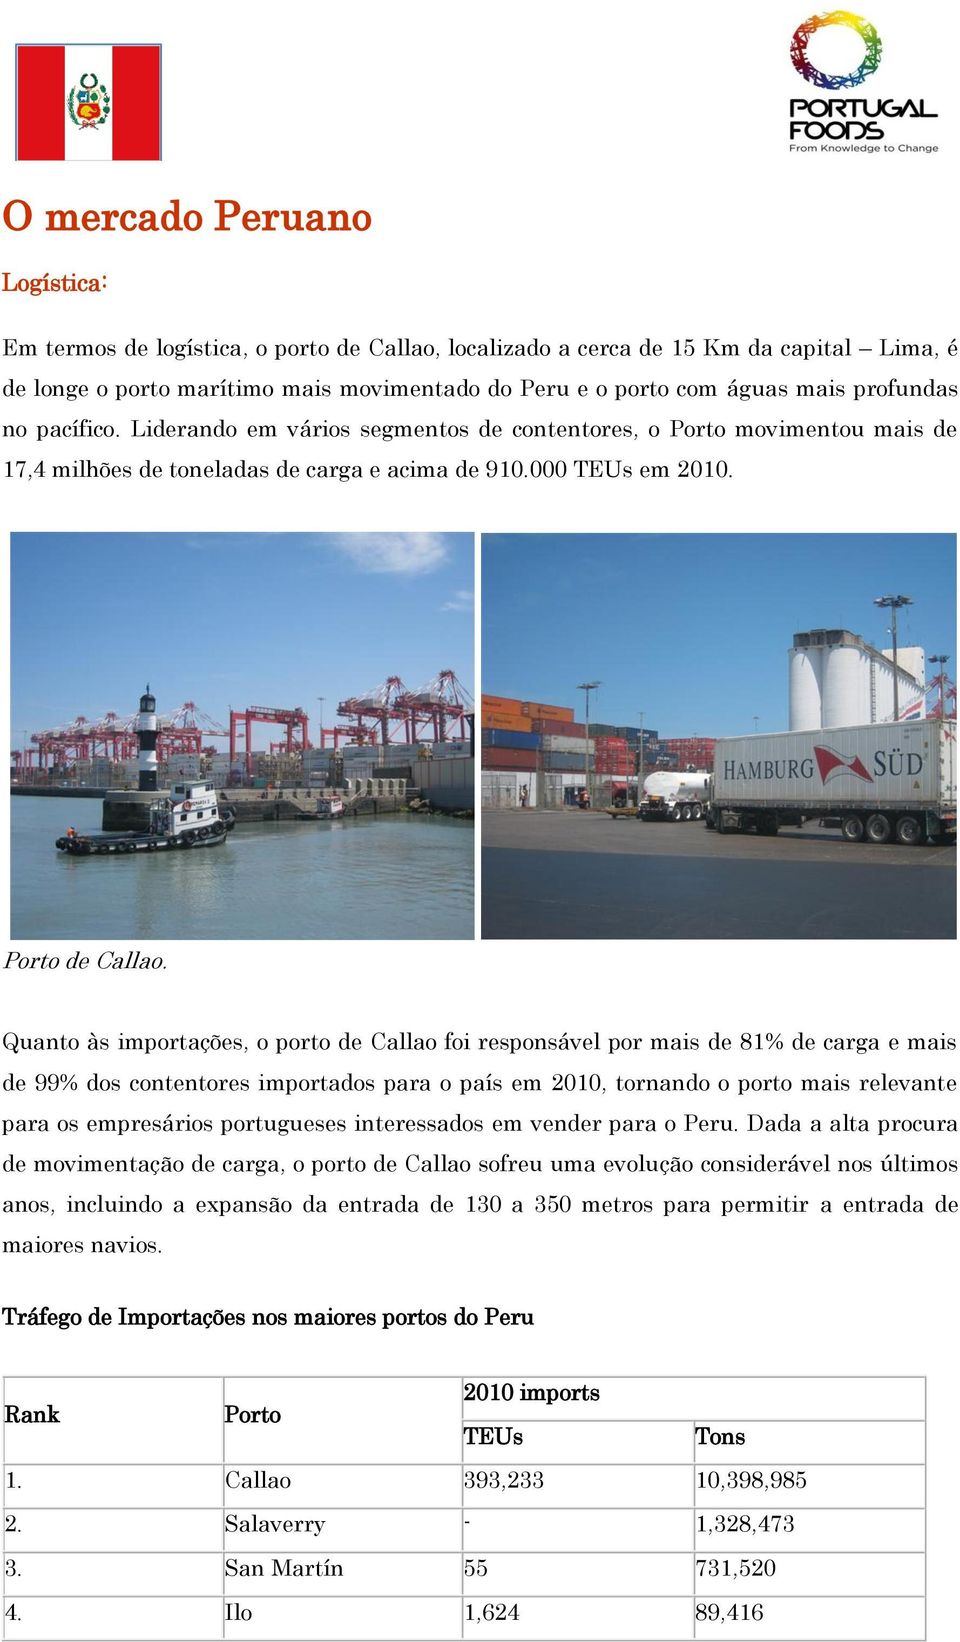 Quanto às importações, o porto de Callao foi responsável por mais de 81% de carga e mais de 99% dos contentores importados para o país em 2010, tornando o porto mais relevante para os empresários